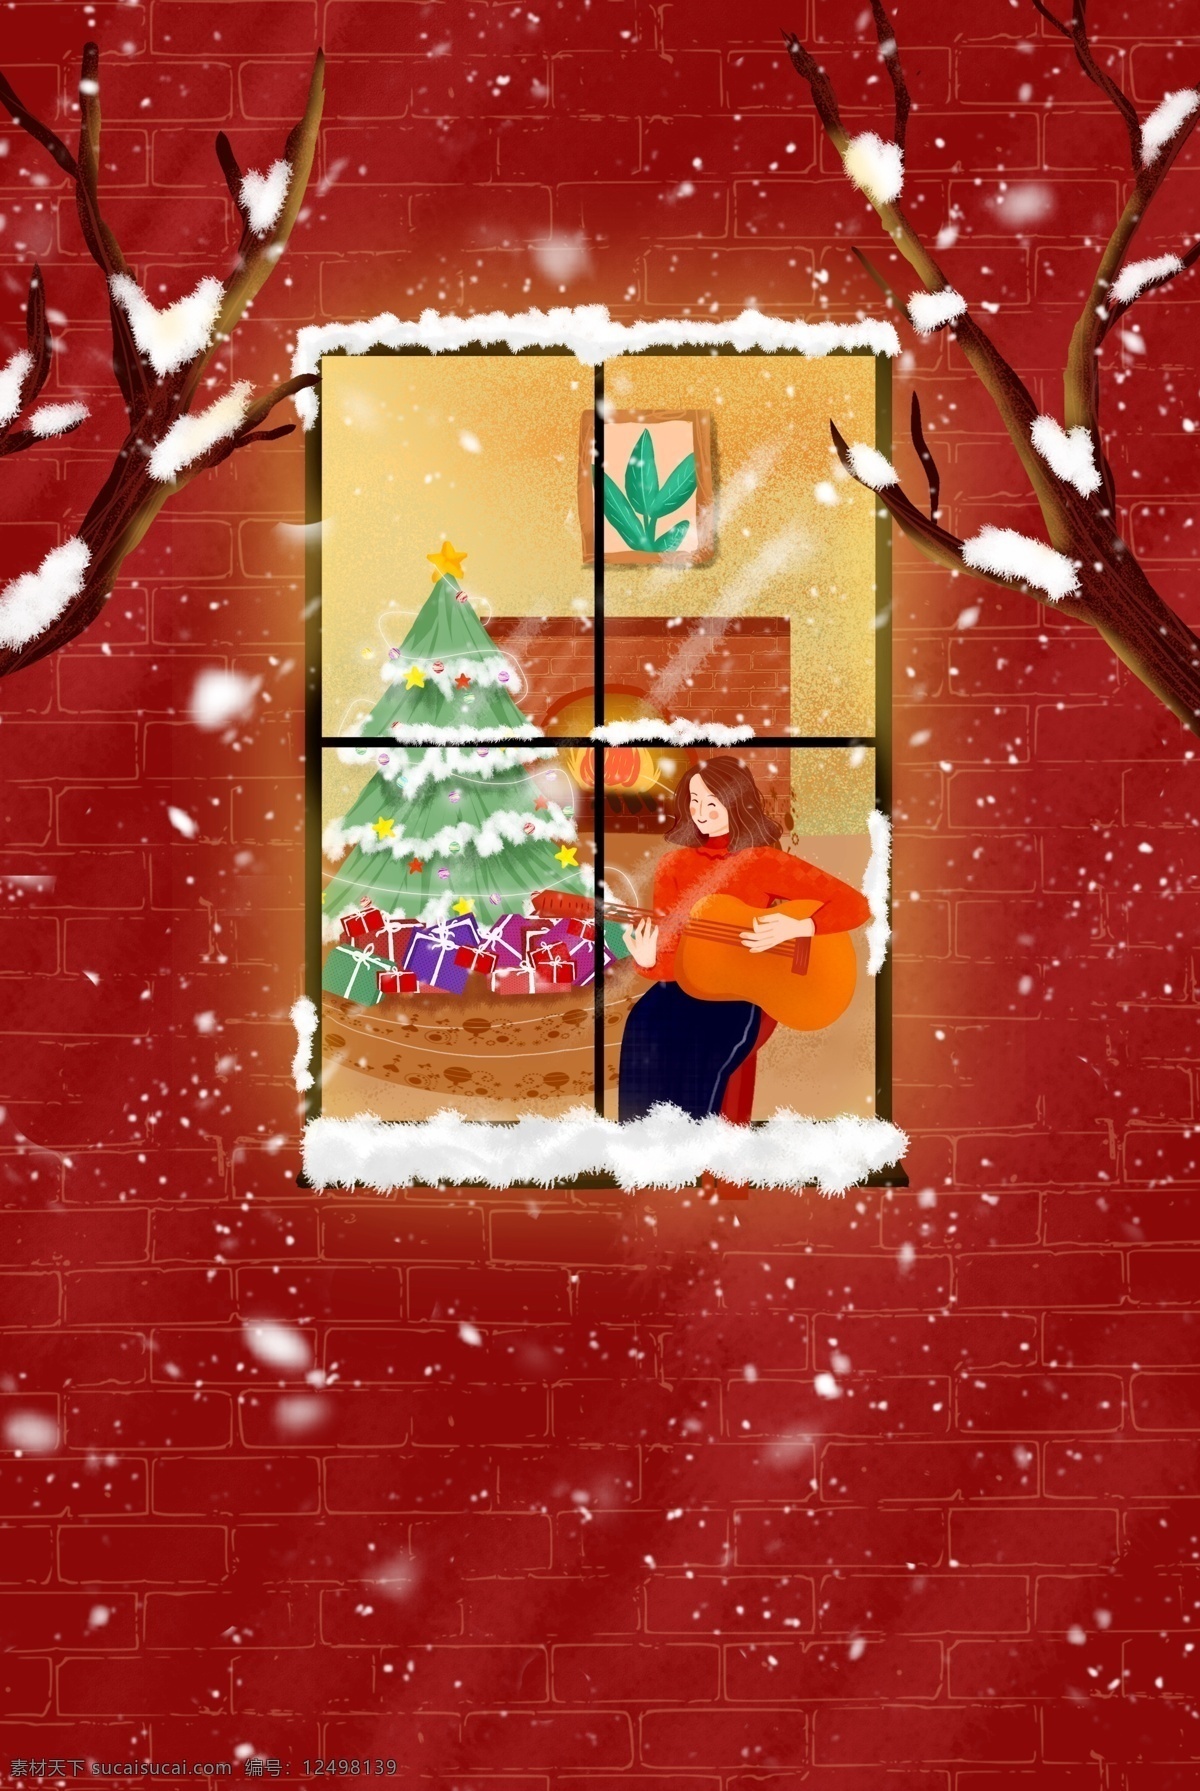 圣诞节 窗前 吉他 女孩 红色 插画 海报 圣诞树 圣诞礼物 温馨 树木 雪花 促销海报